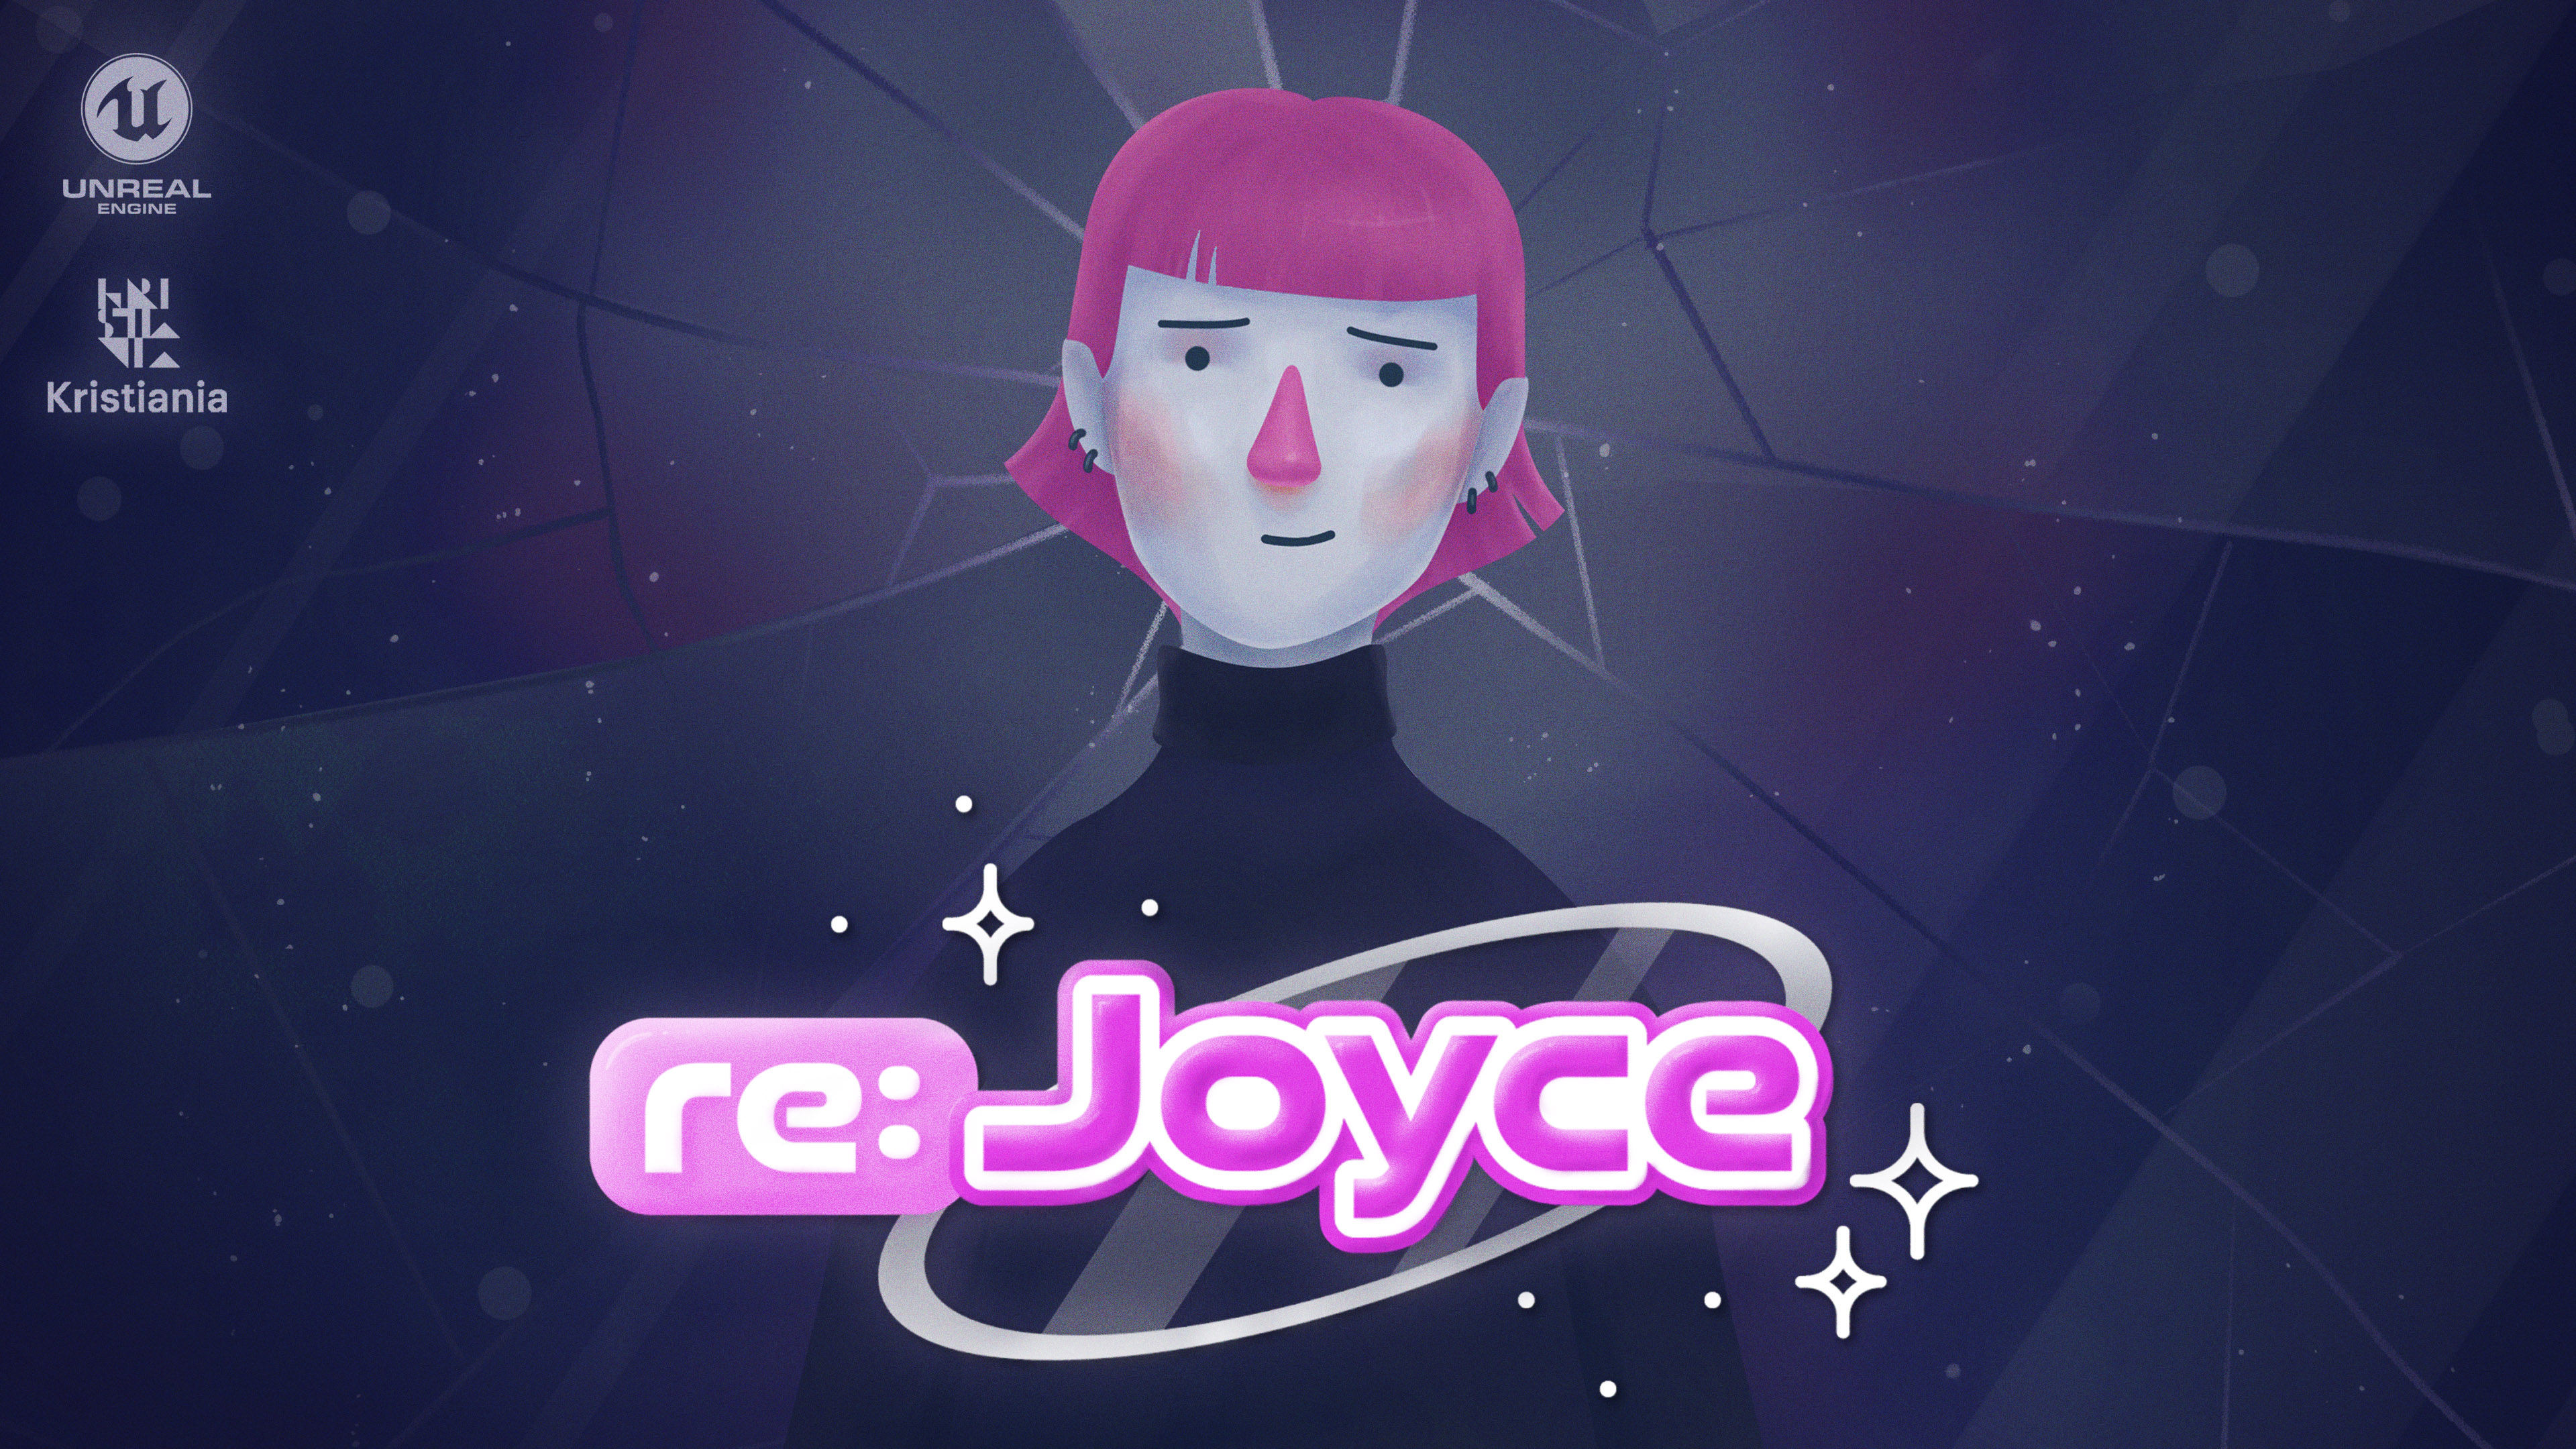 Re:Joyce